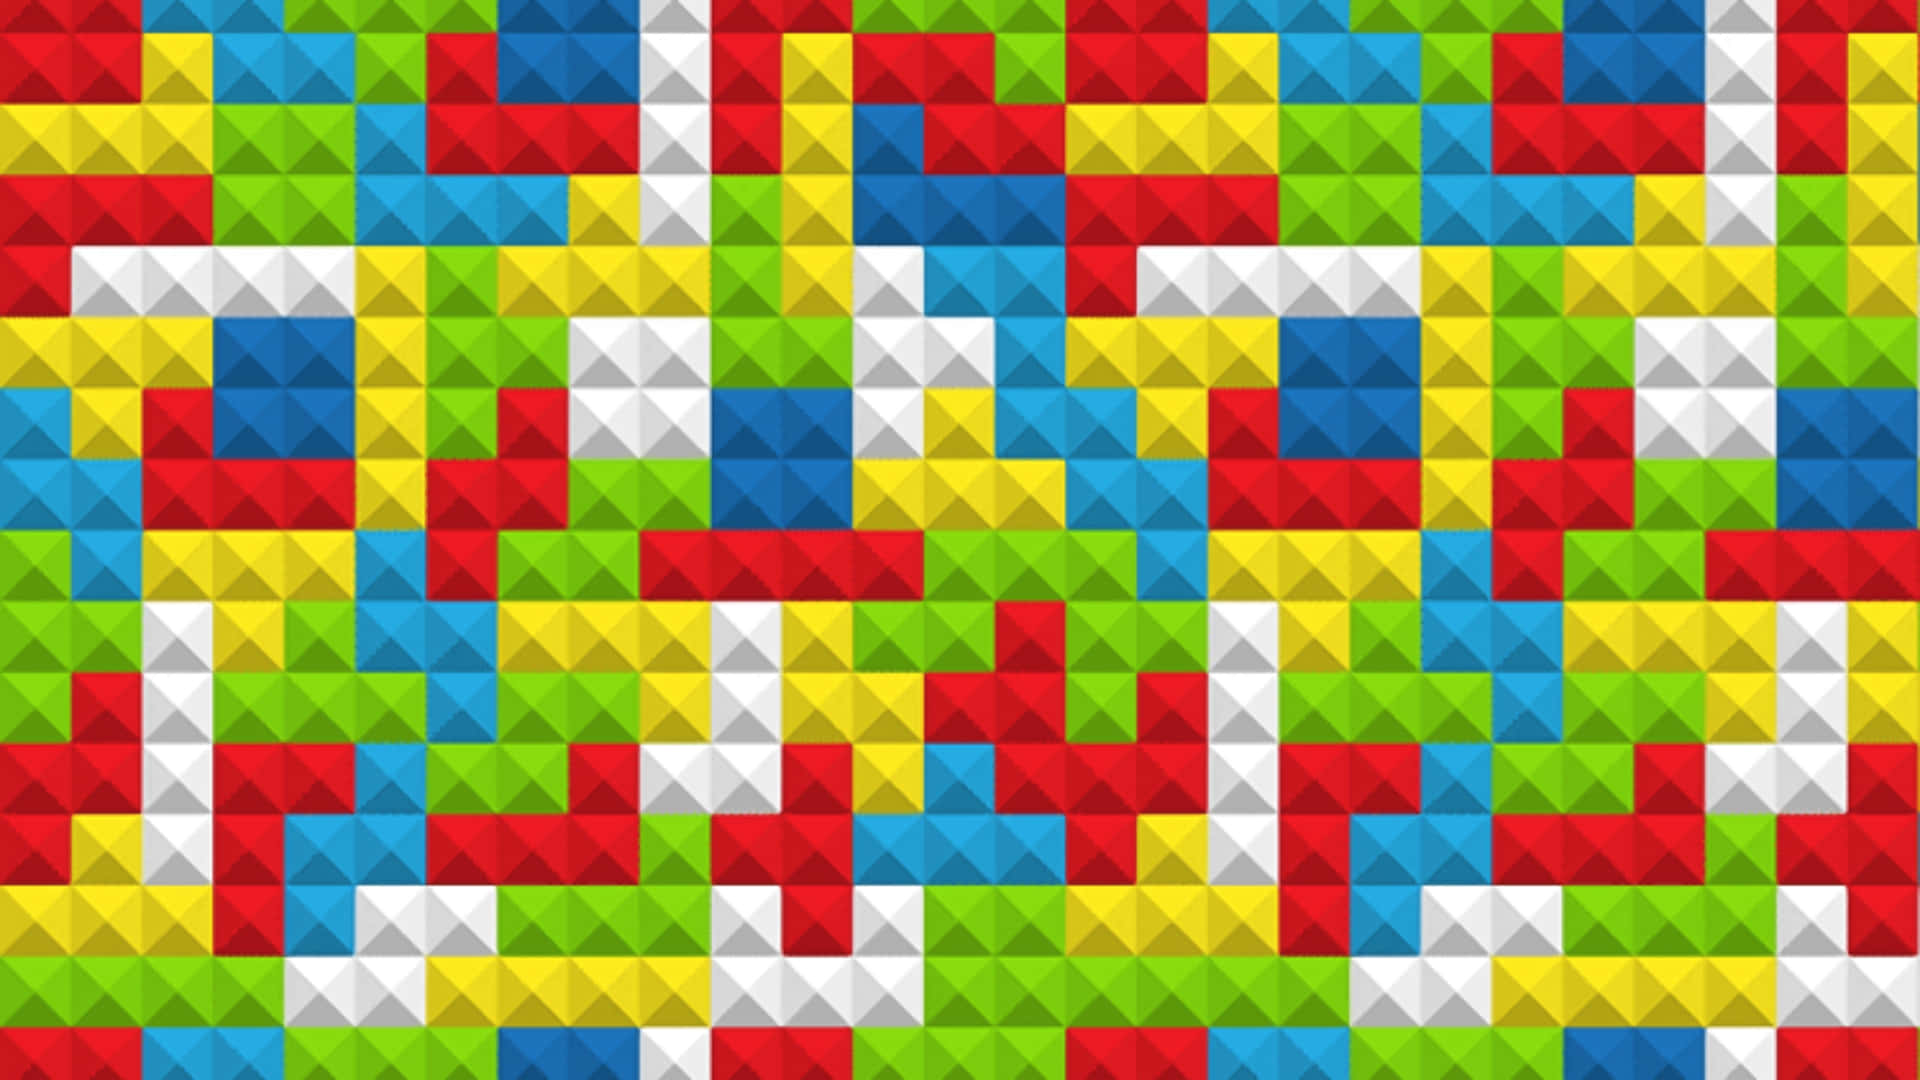 Tetris3840 X 2160 Hintergrund.